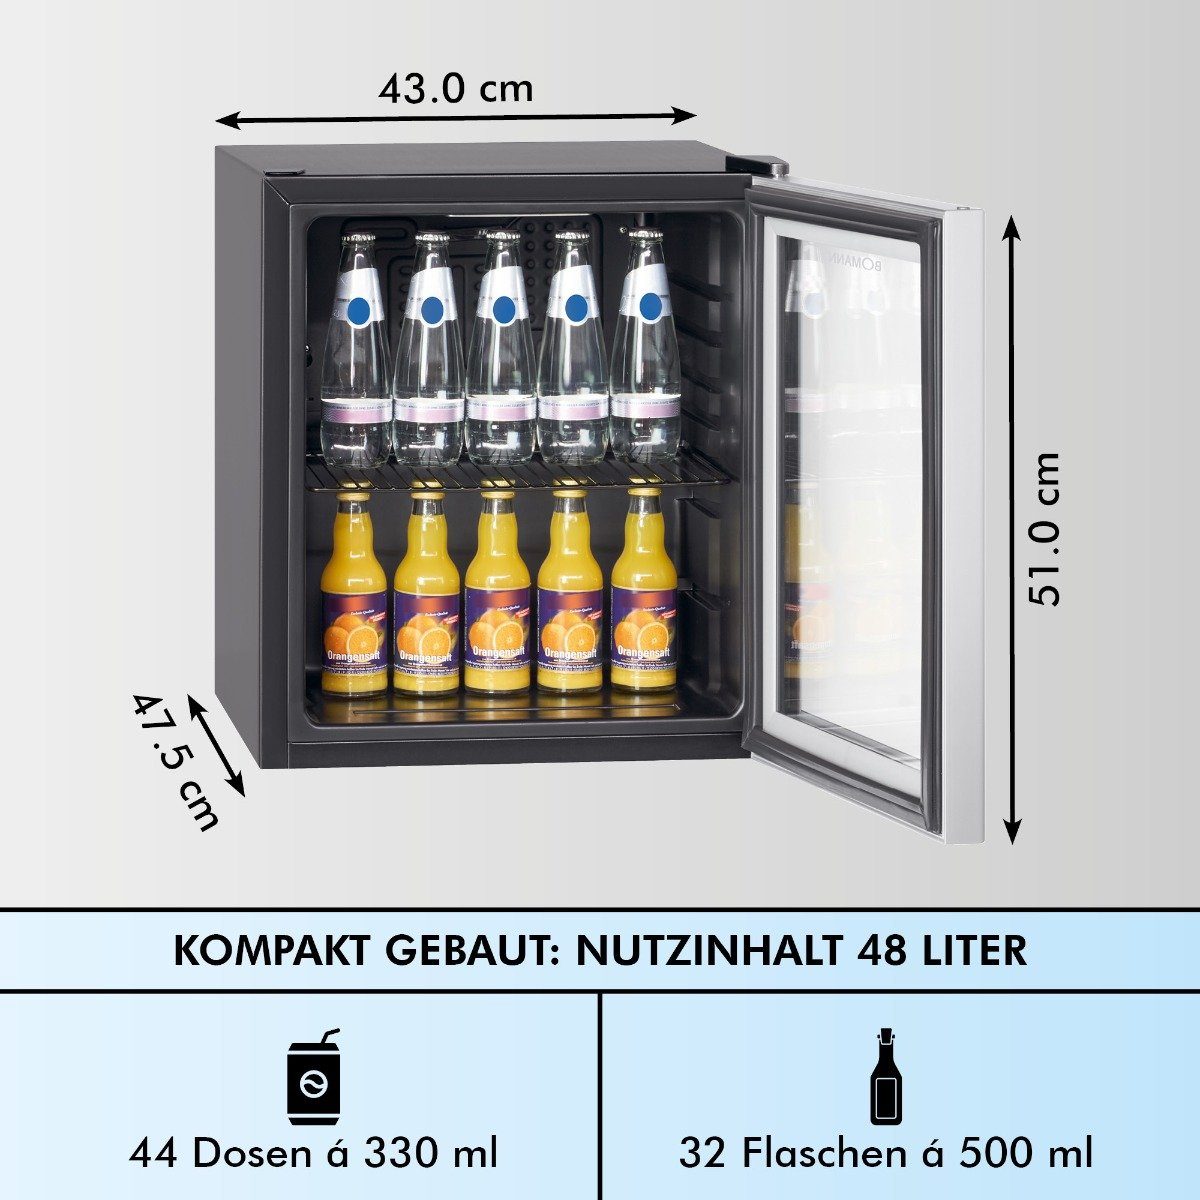 BOMANN Getränkekühlschrank KSG 43 cm cm breit hoch, 51 7282, schwarz